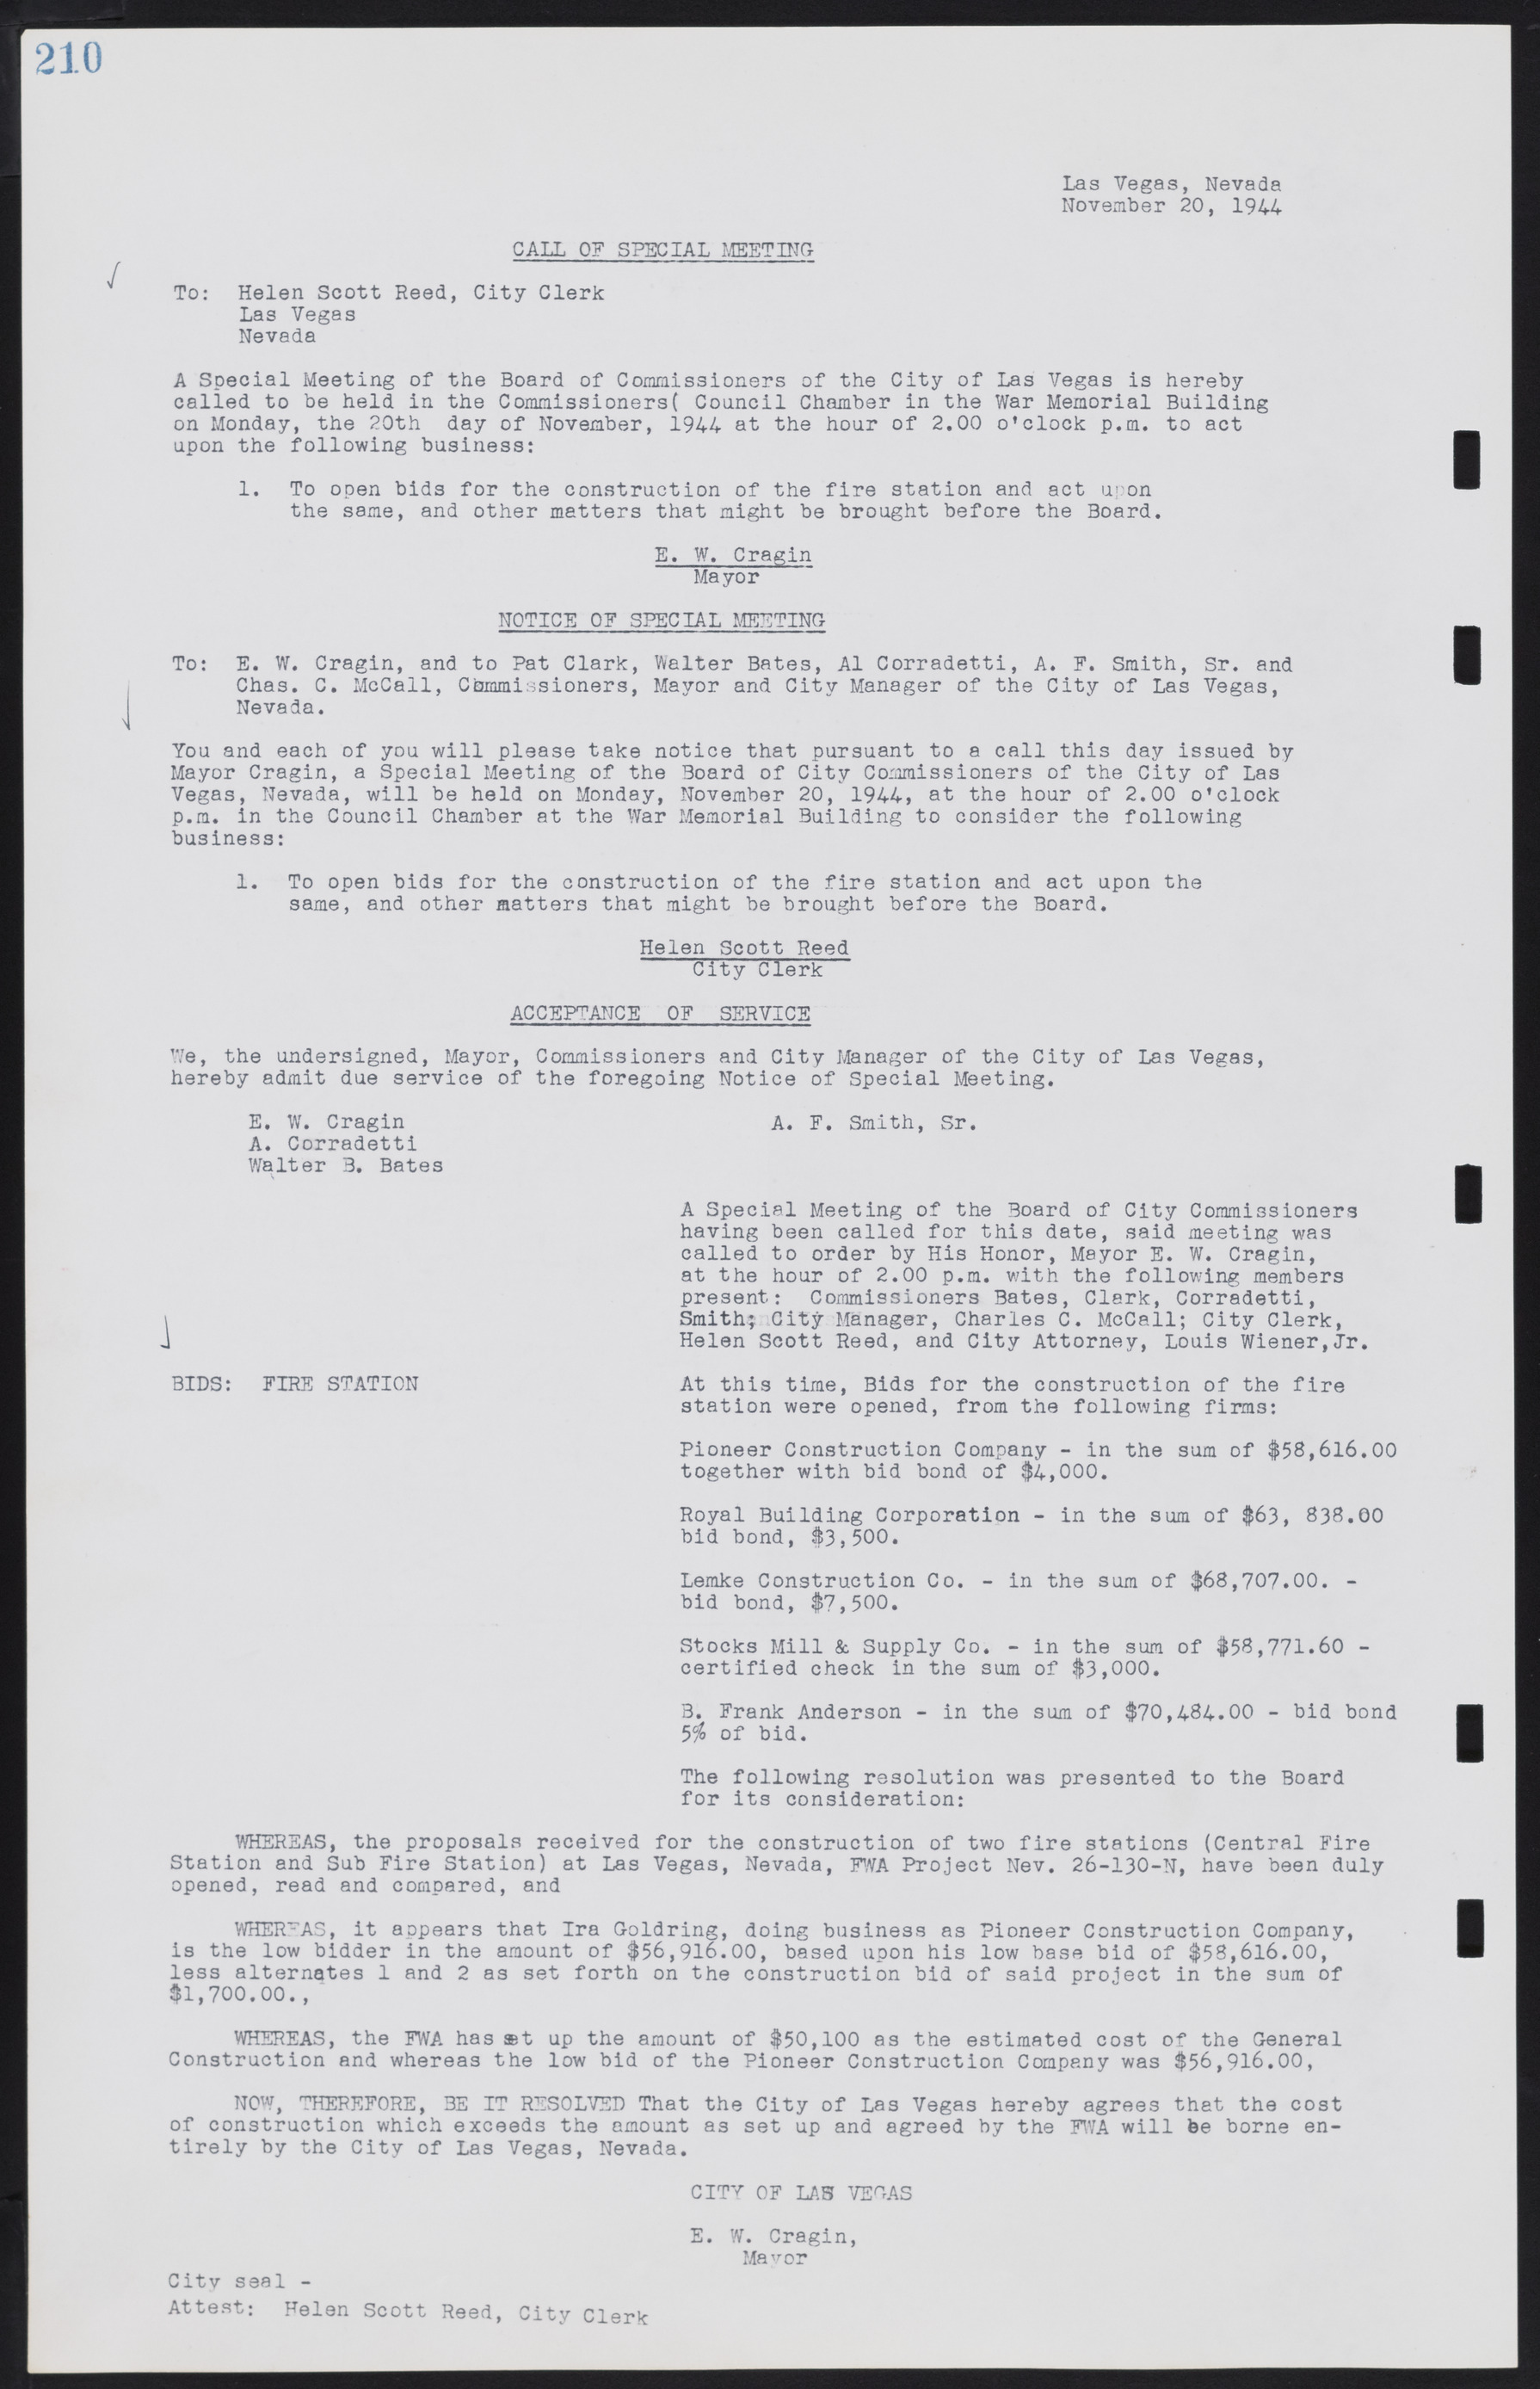 Las Vegas City Commission Minutes, August 11, 1942 to December 30, 1946, lvc000005-229